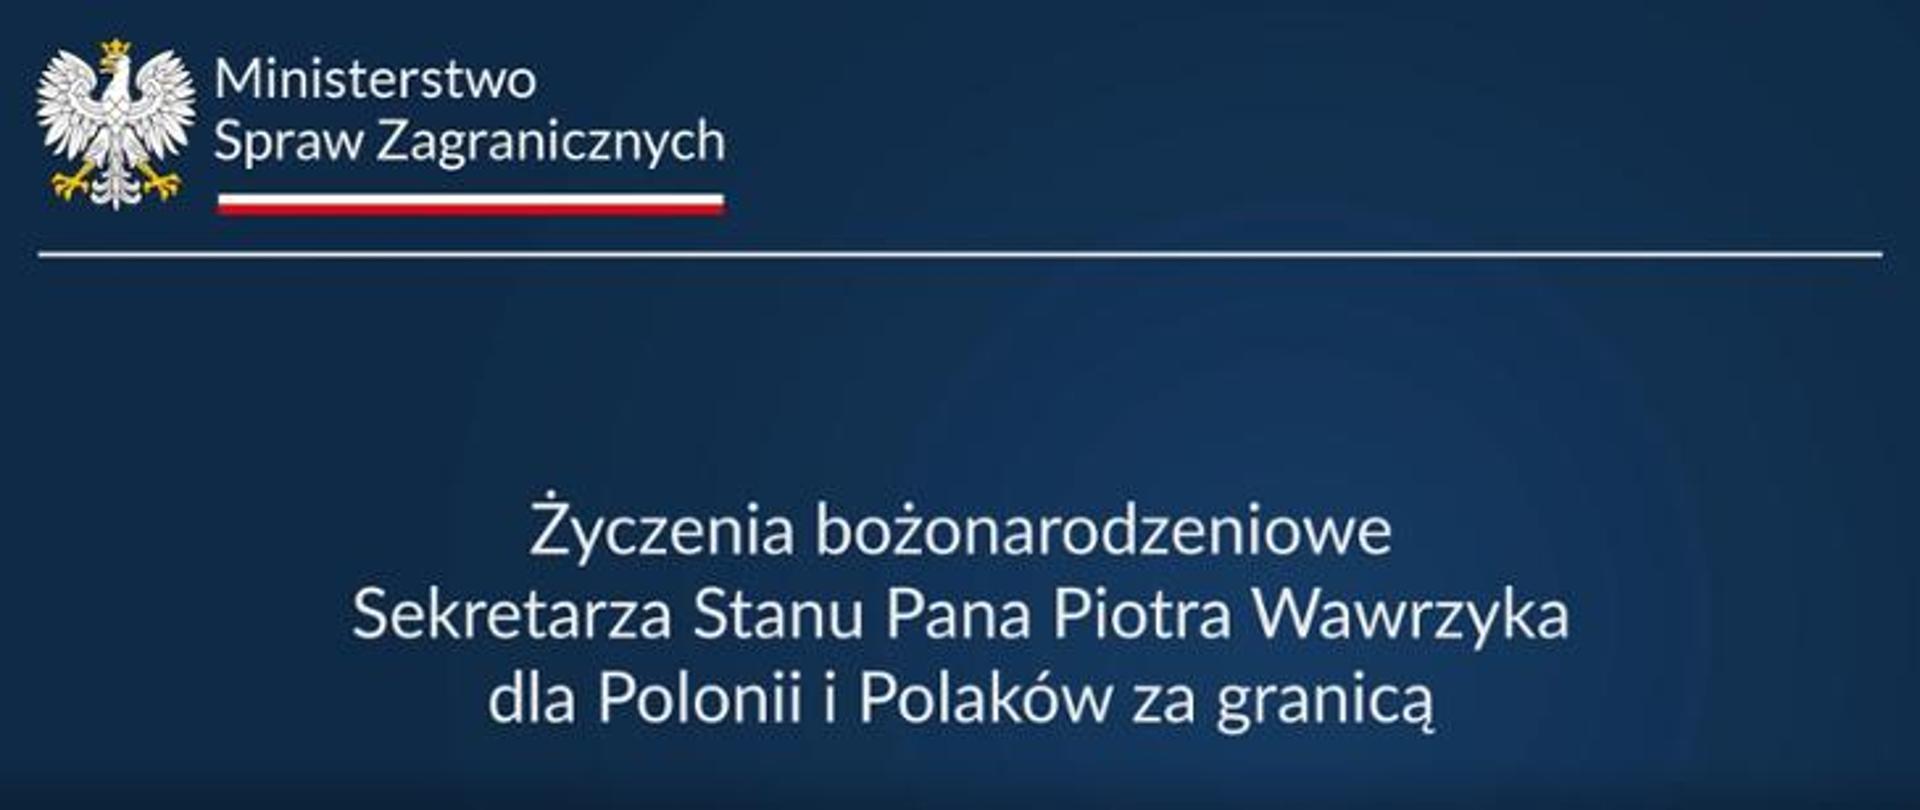 banner życzenia dla Polonii